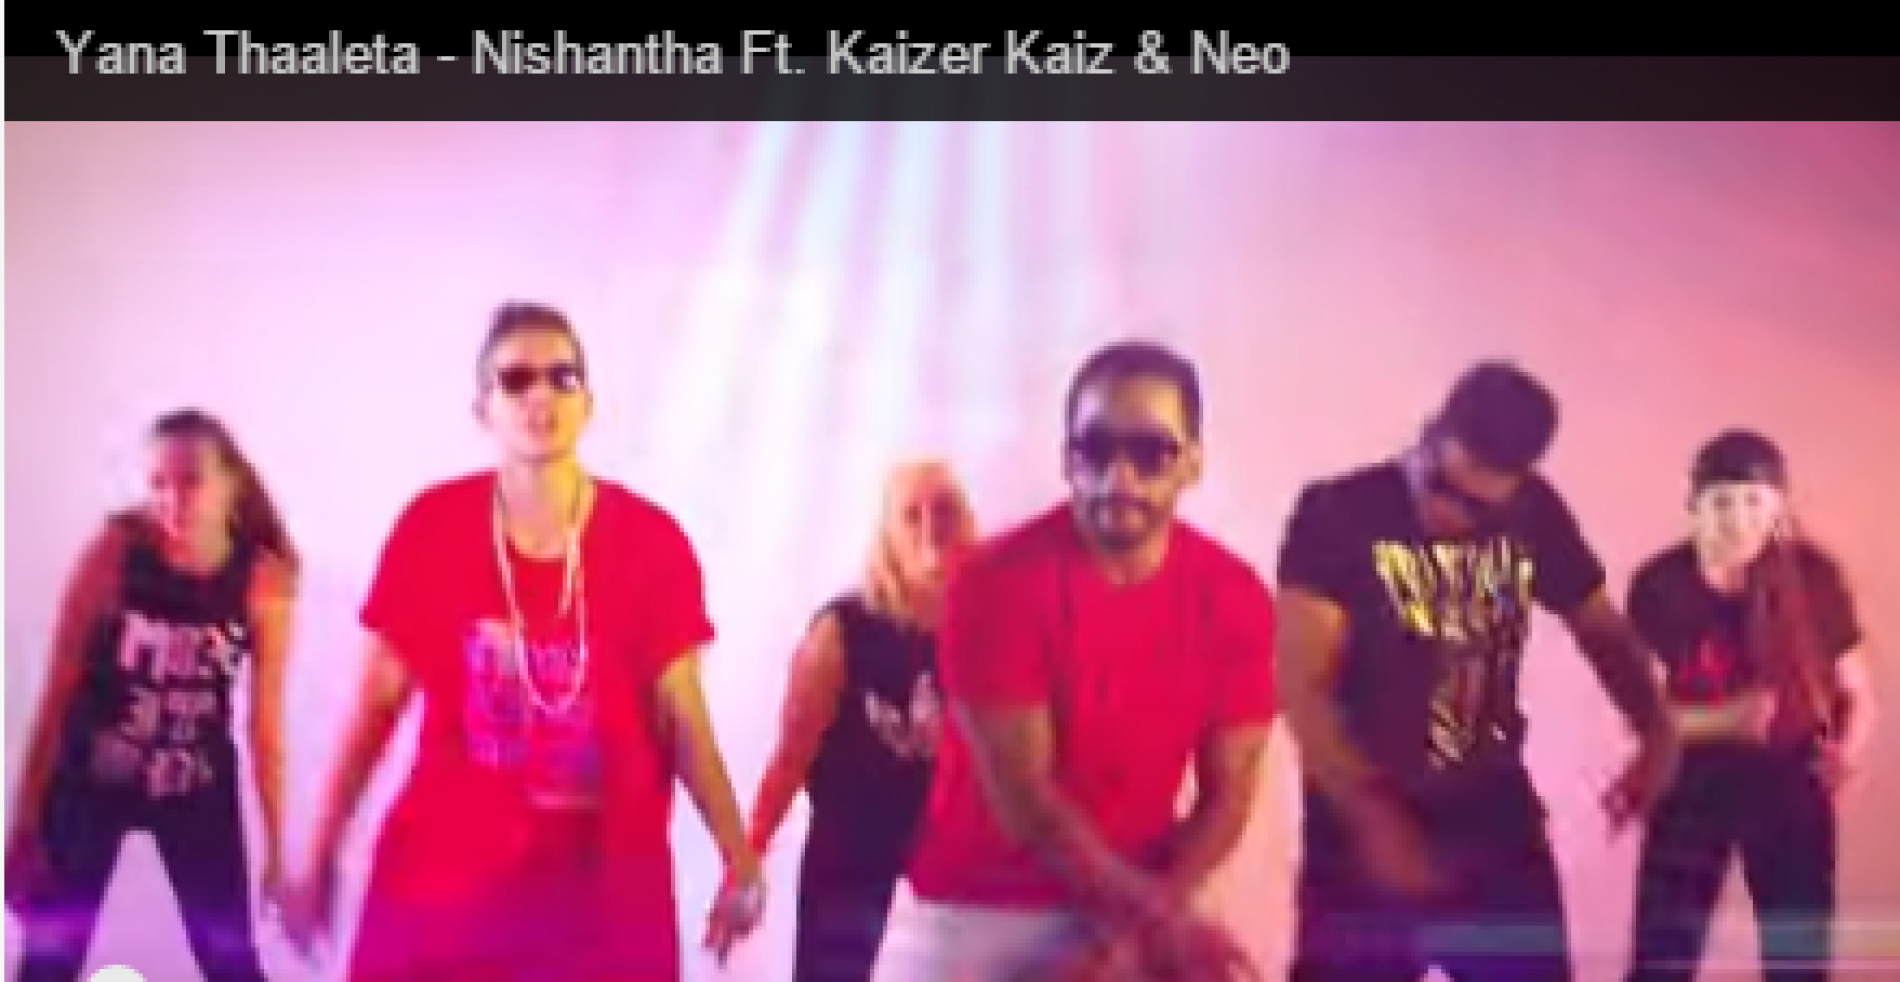 Nishantha Ft. Kaizer Kaiz & Neo – Yana Thaleta